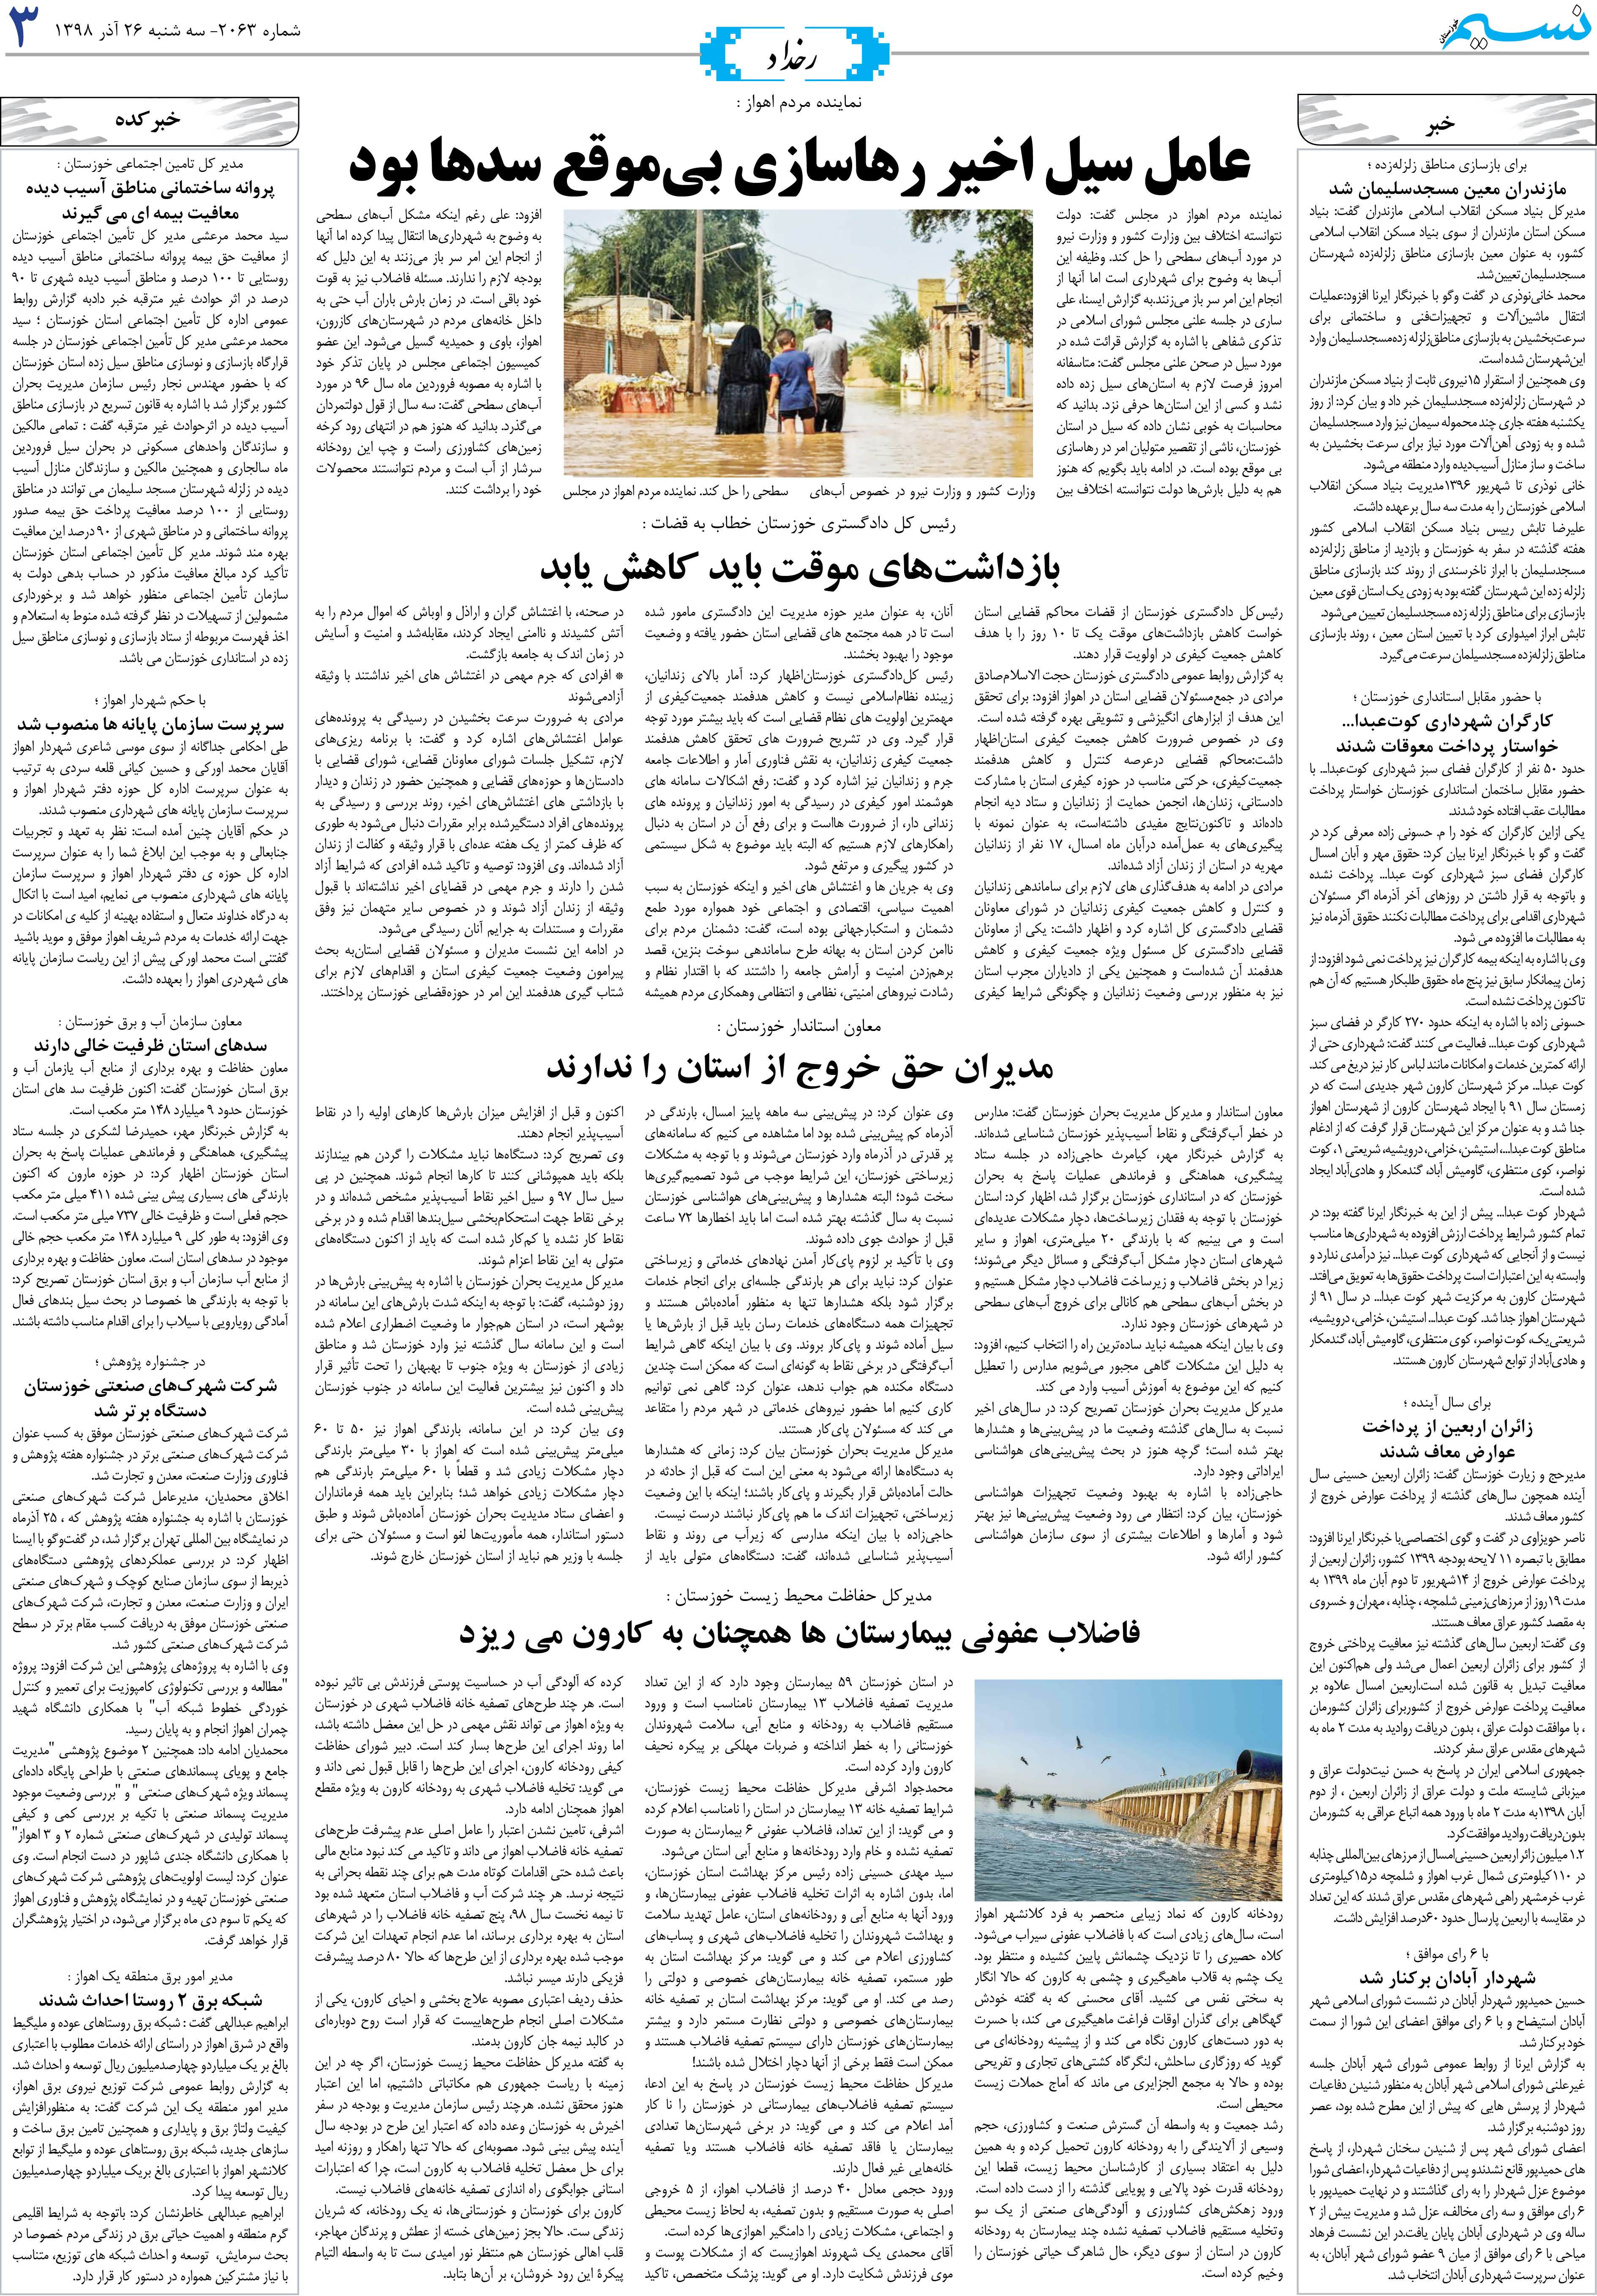 صفحه رخداد روزنامه نسیم شماره 2063